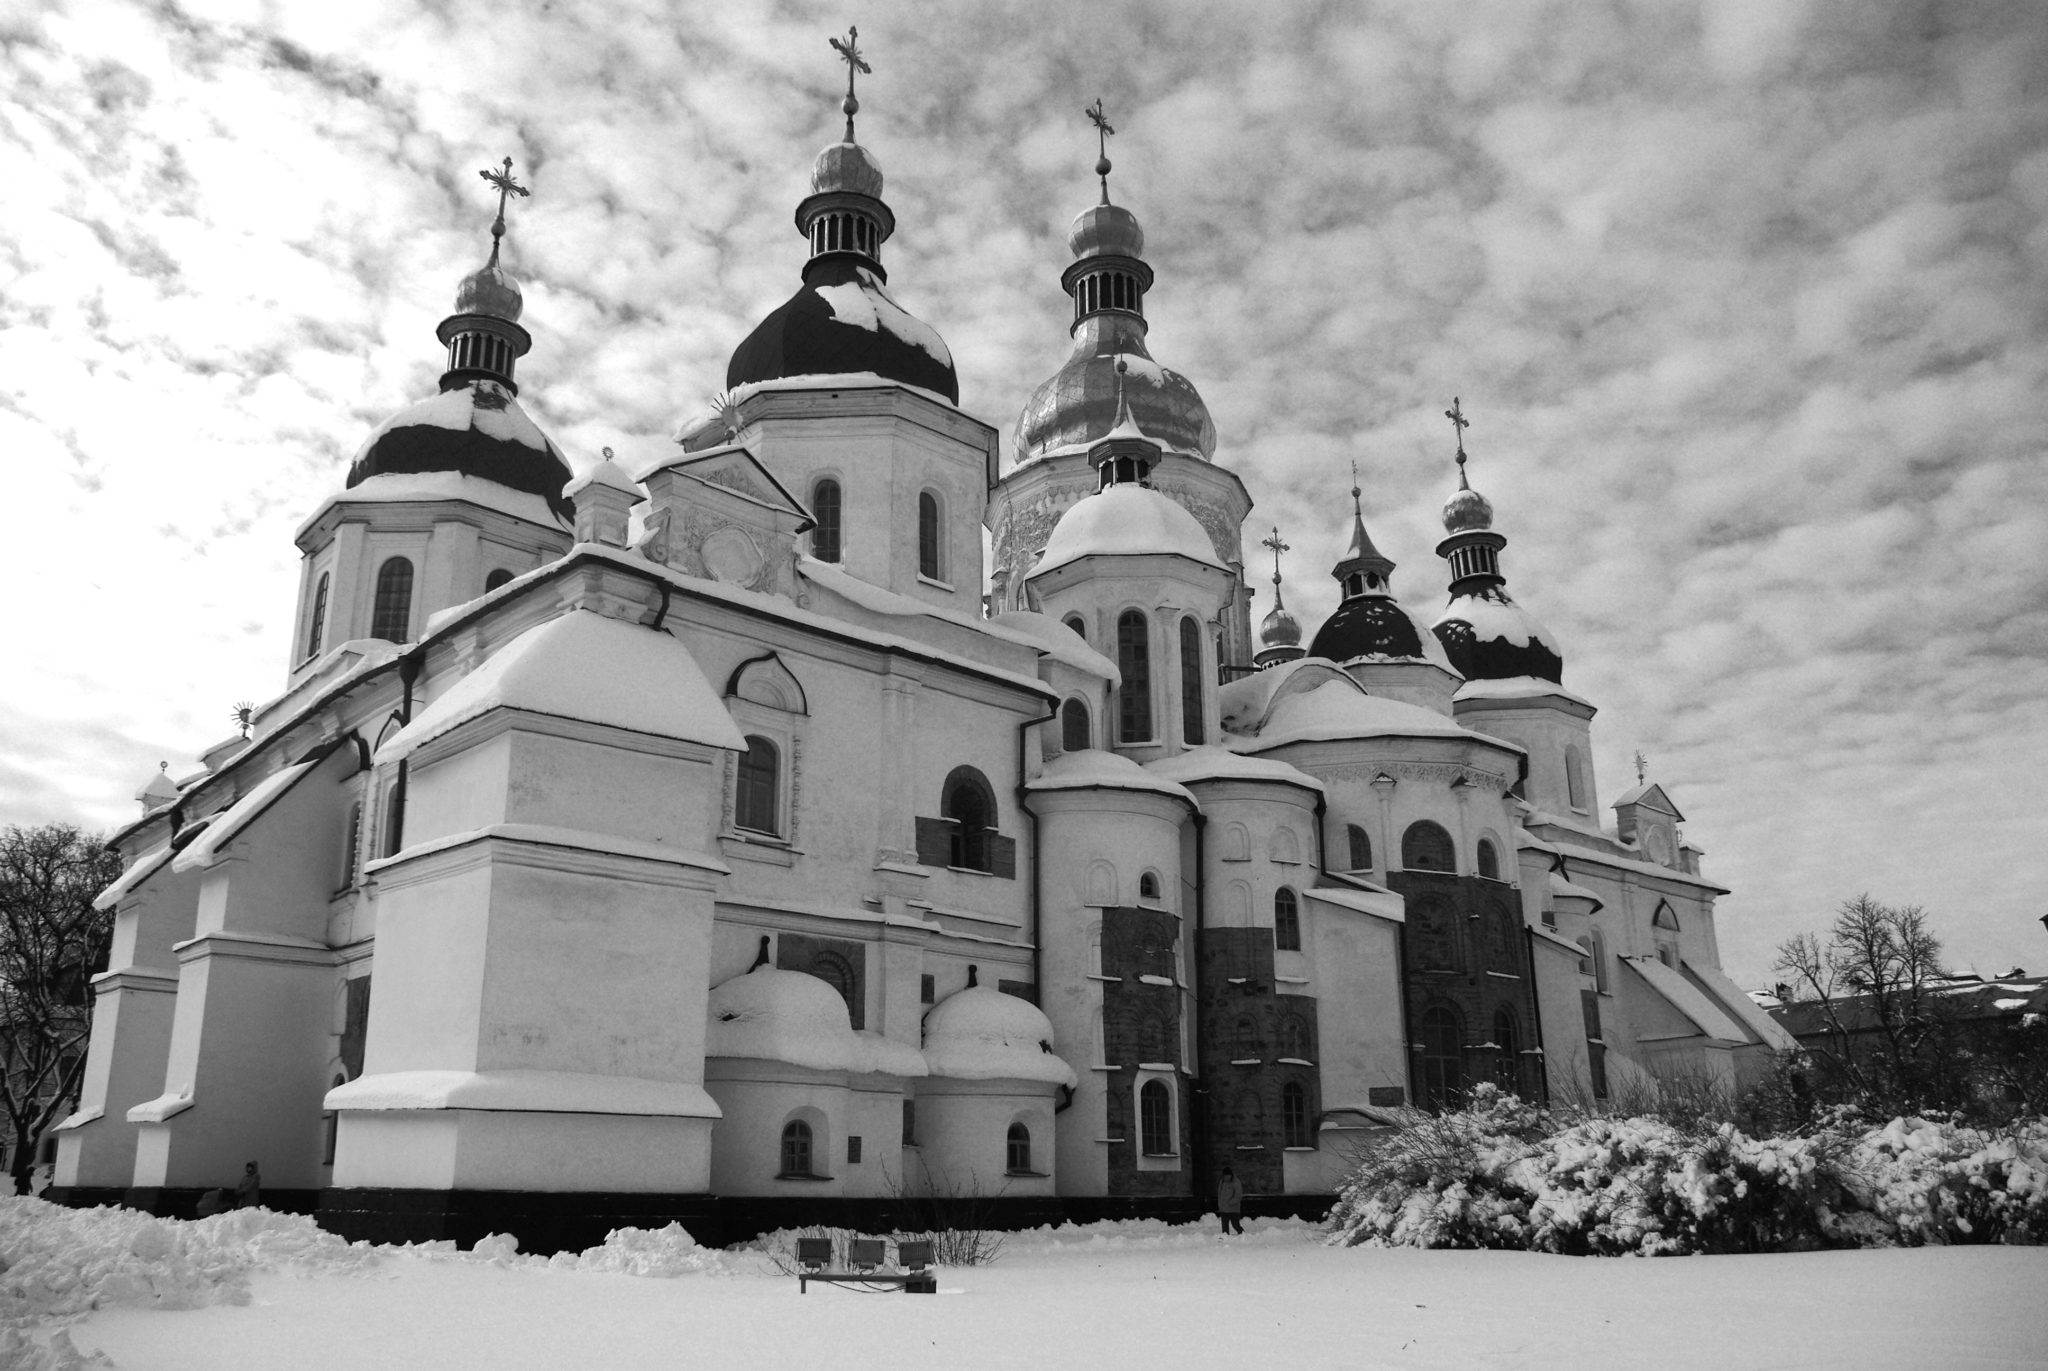 Cathédrale Sainte Sophie de Kiev